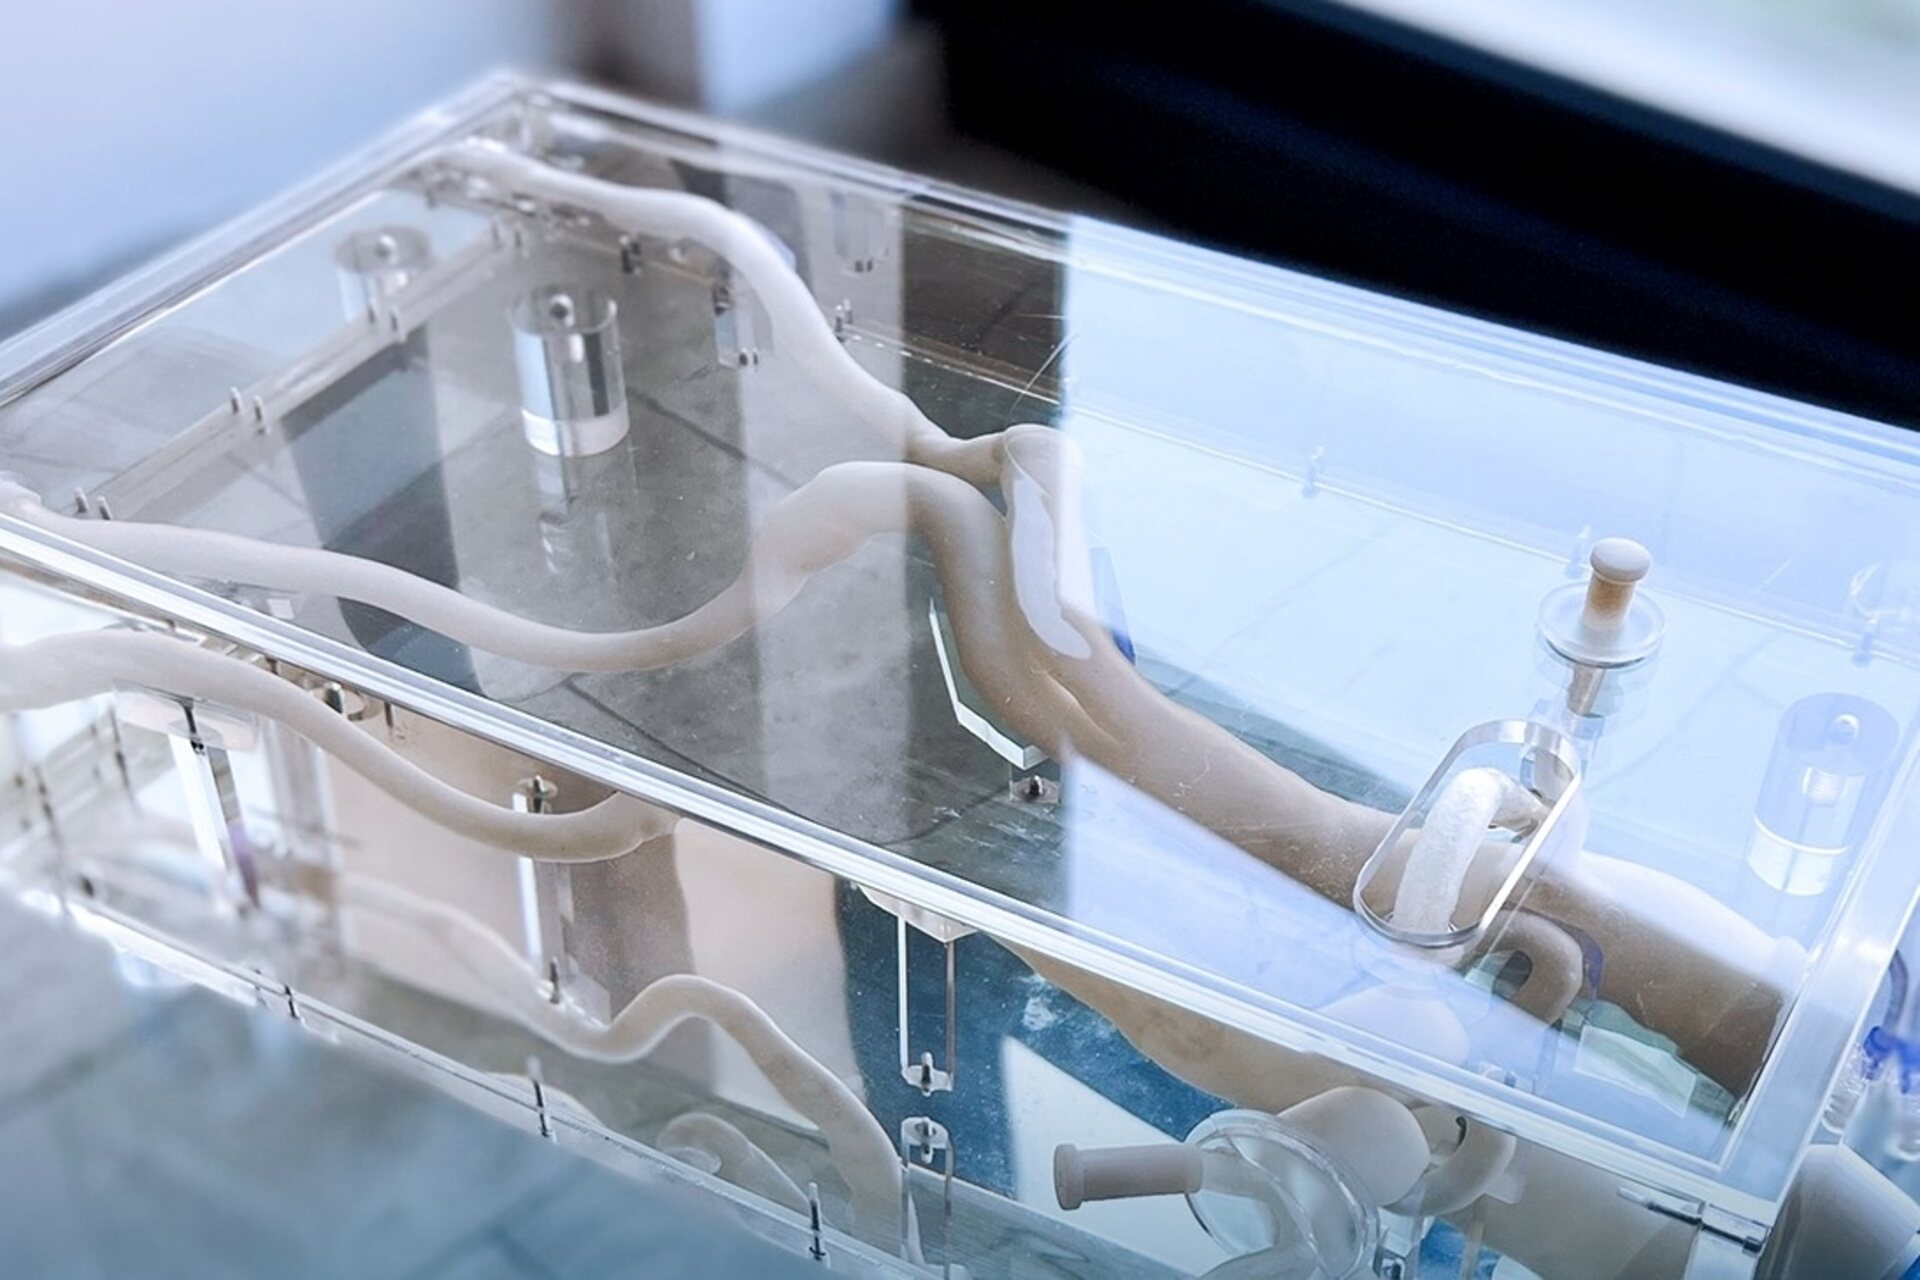 Simulatore aortico:il simulatore aortico di un aneurisma nell’area del pancreas realizzato con stampa in 3D dal gruppo SolidWorld Group, l’Ospedale San Giovanni di Dio di Firenze e dall’Università degli Studi di Milano